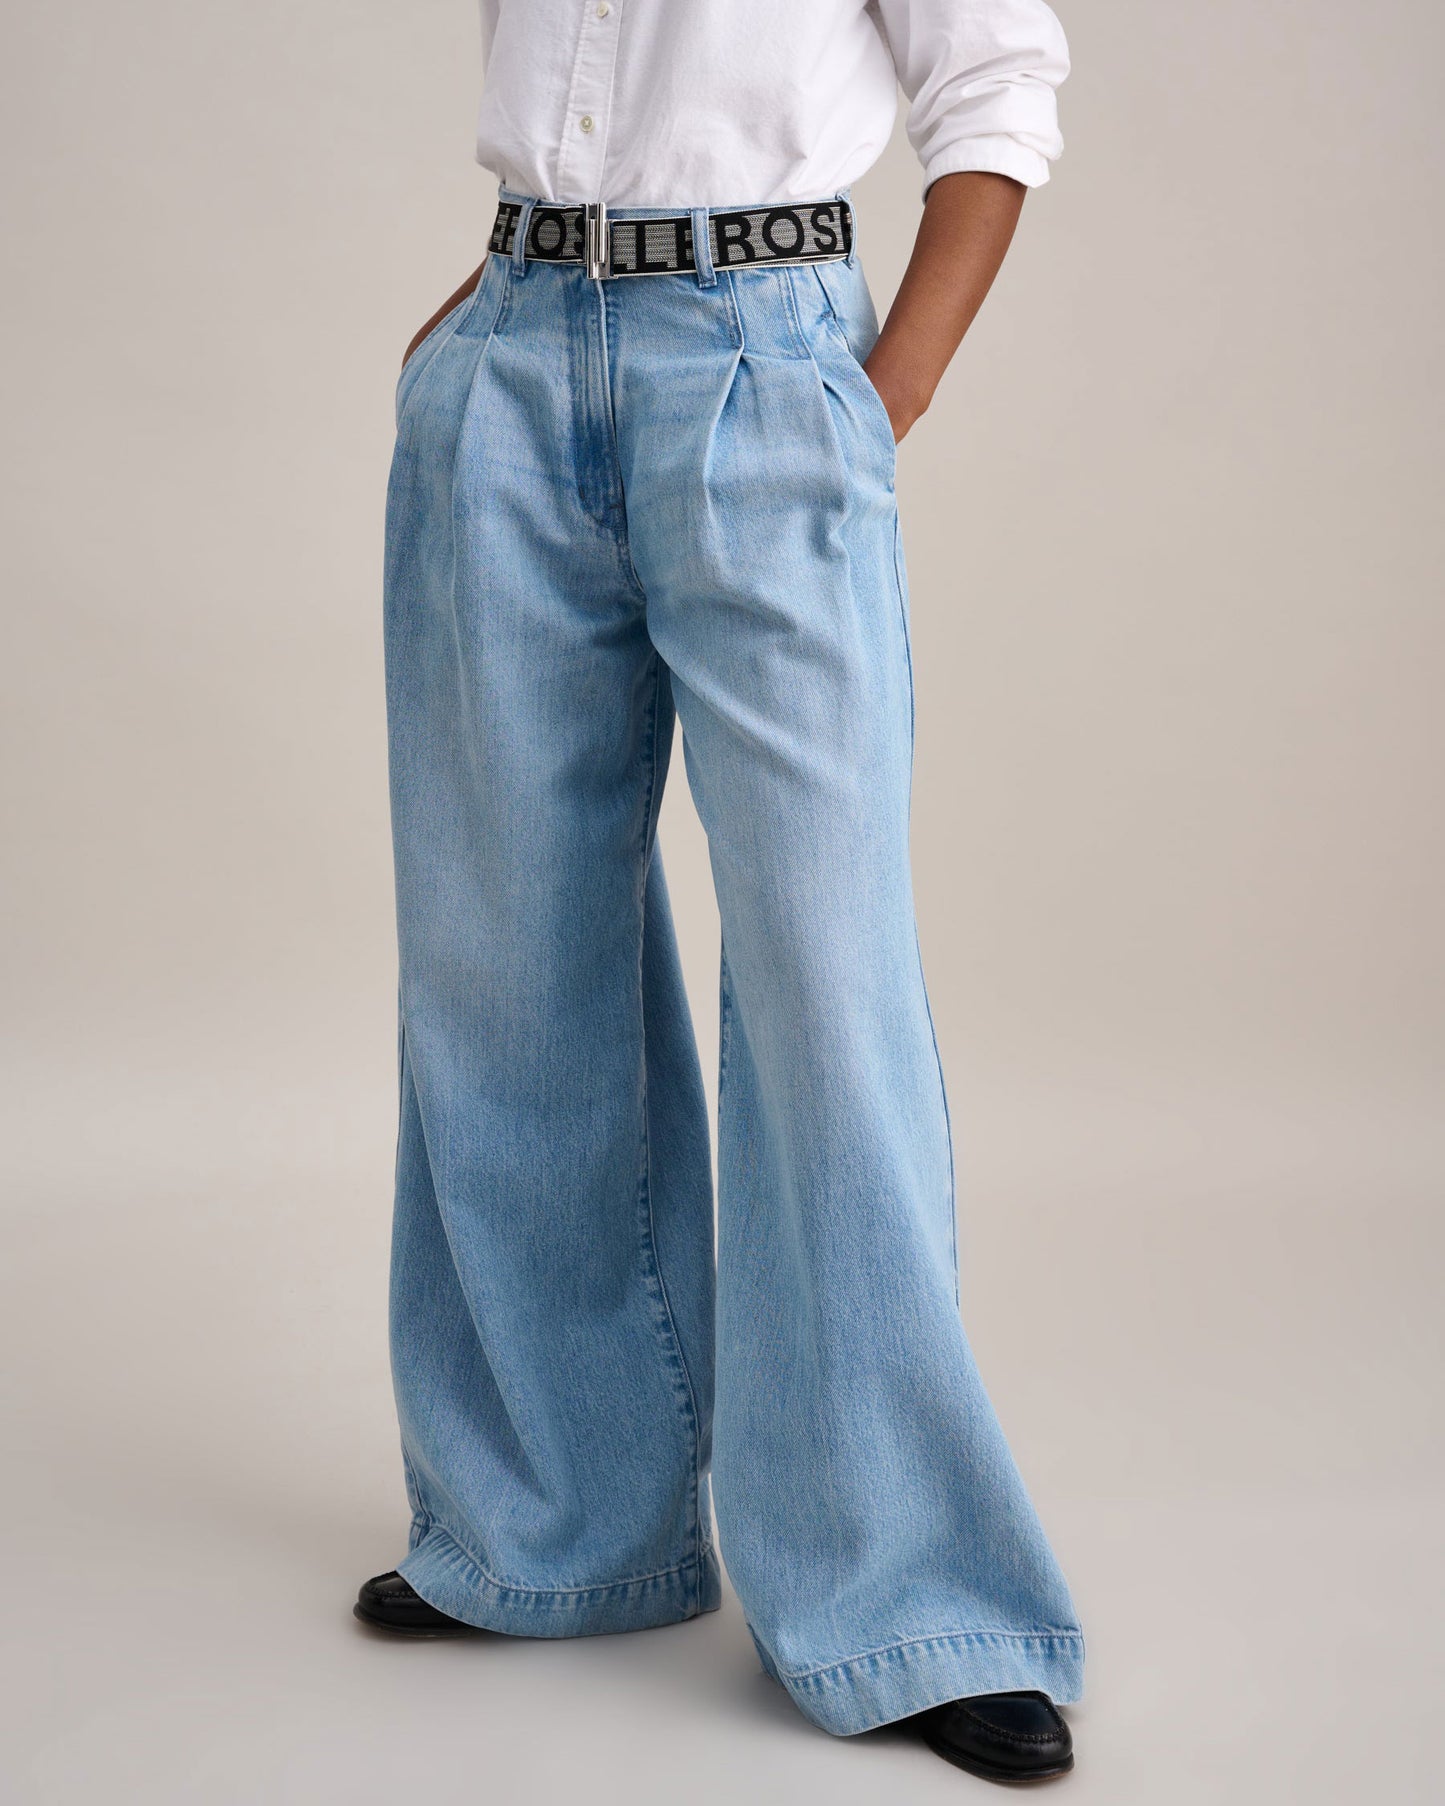 BELLEROSE Pops Jeans in Washed Lt Blue available at Lahn.shop